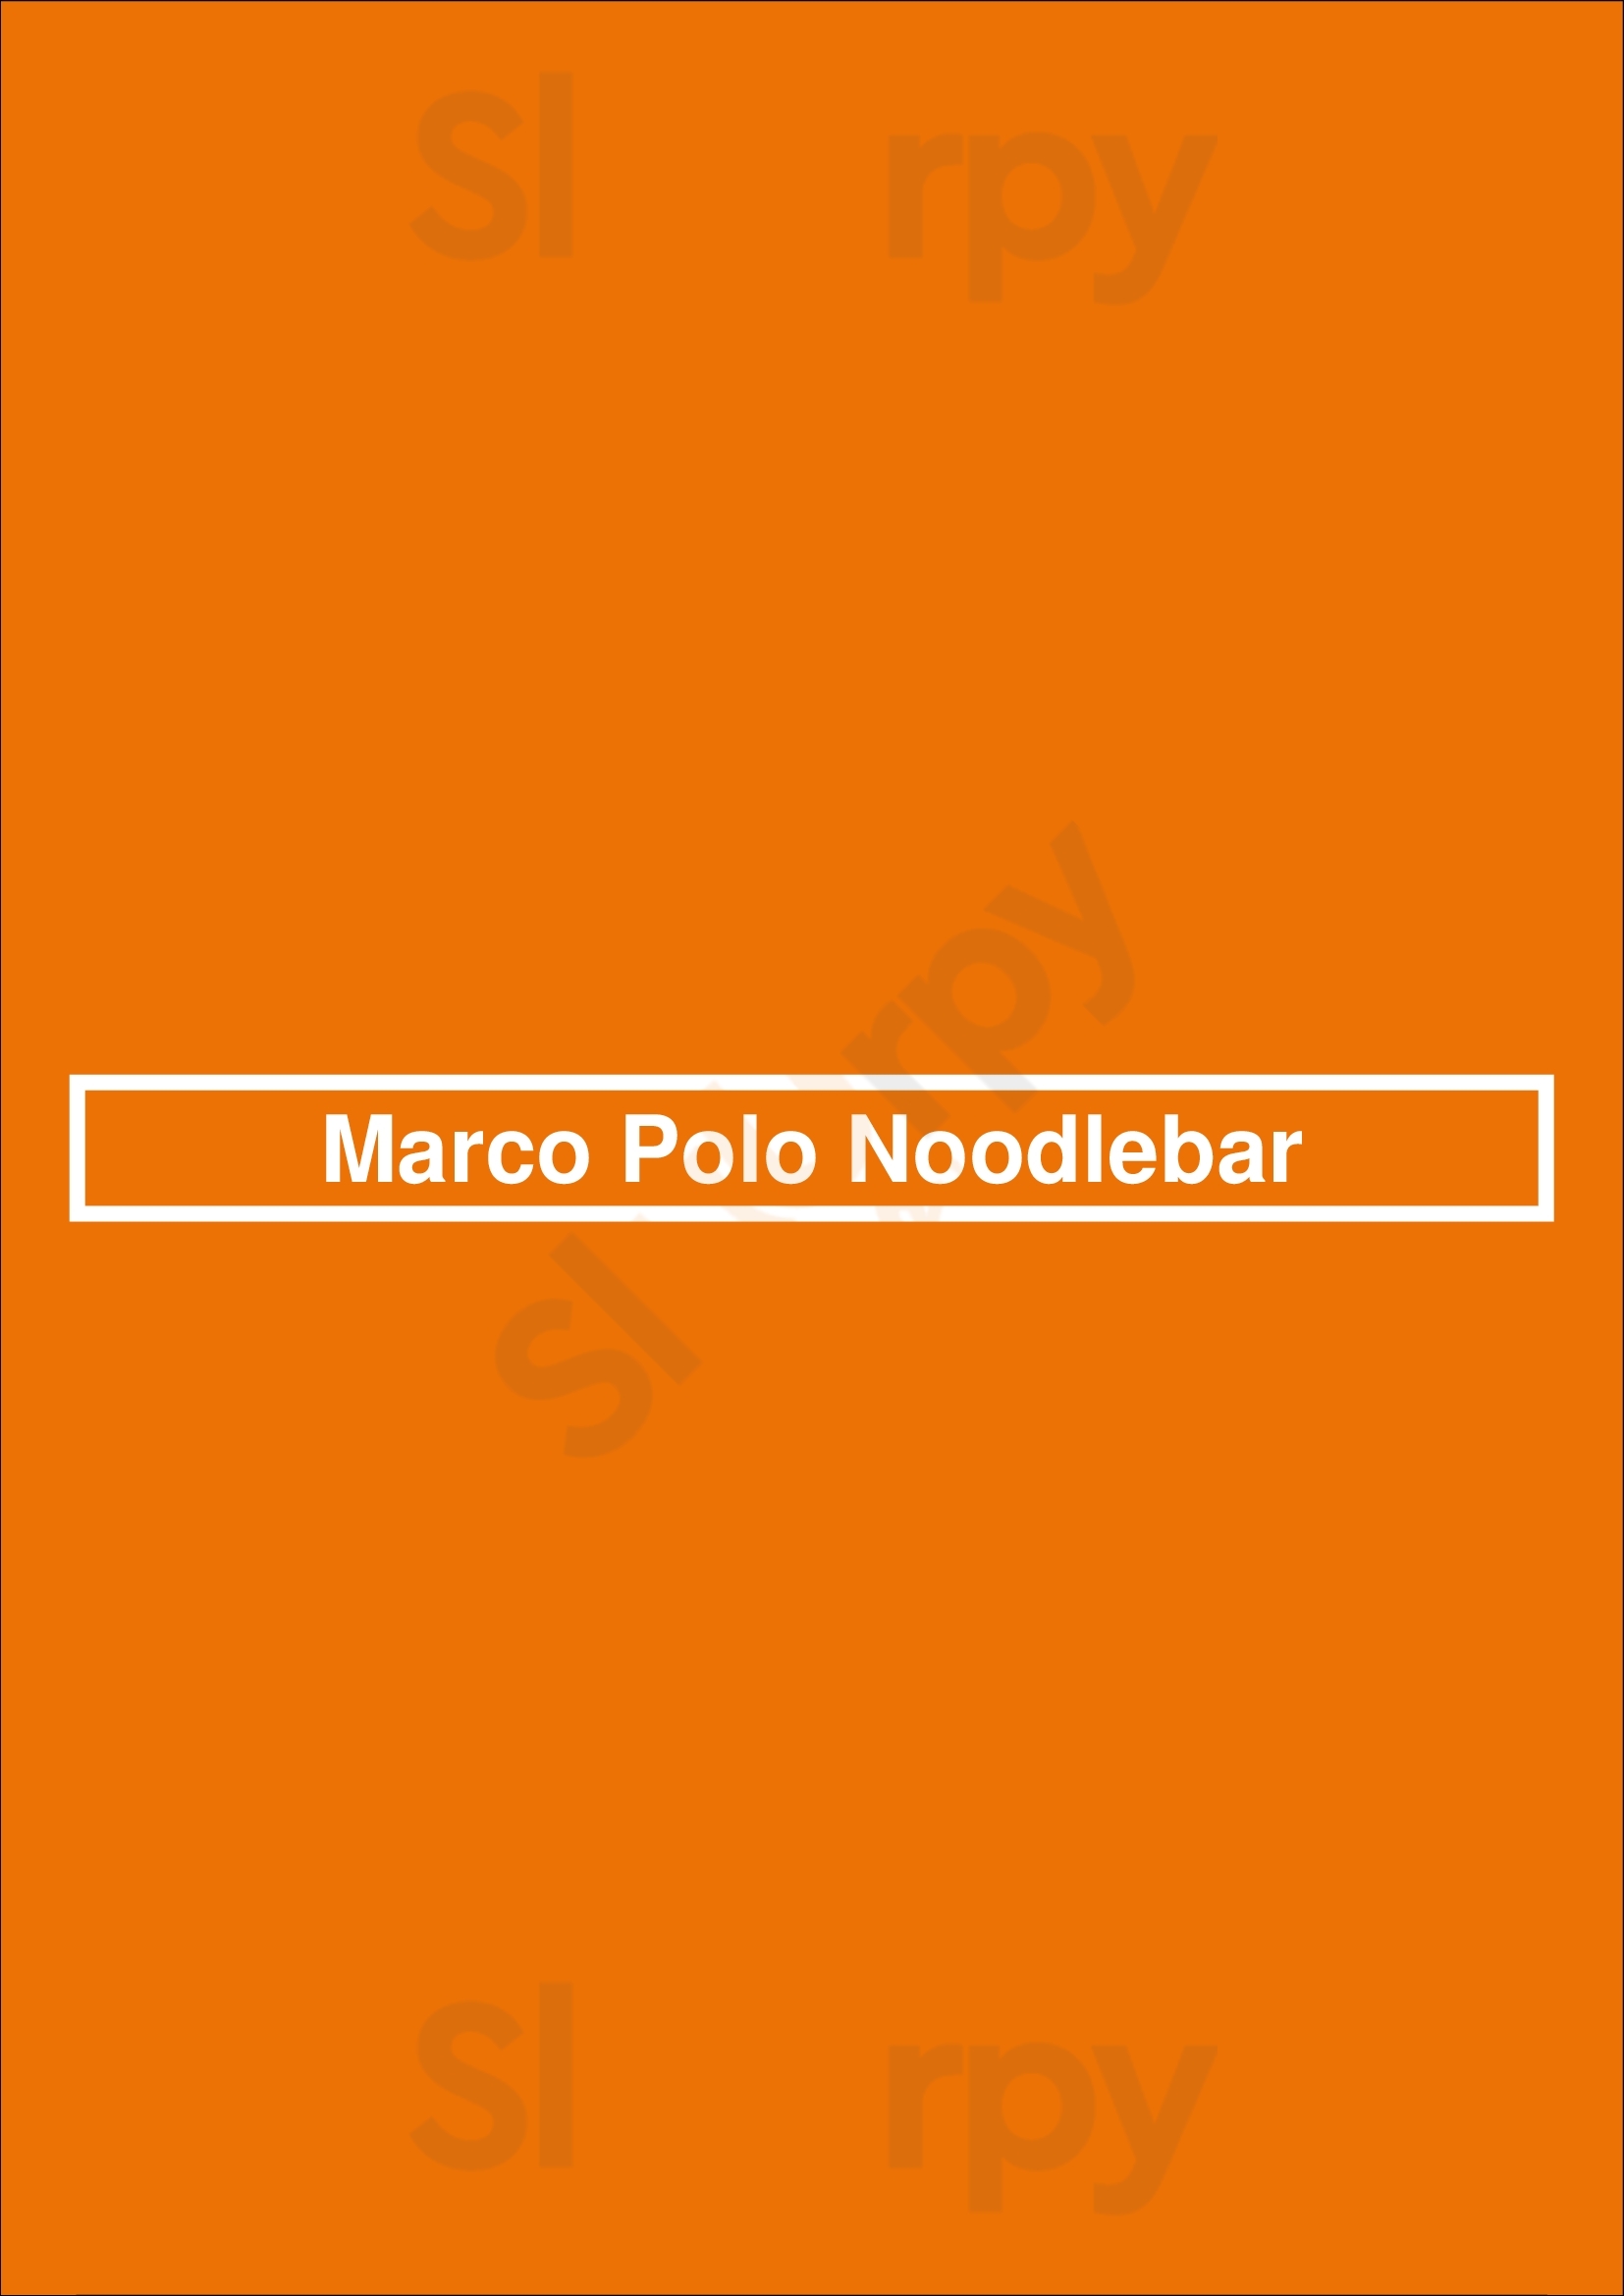 Marco Polo Noodlebar Bruges Menu - 1